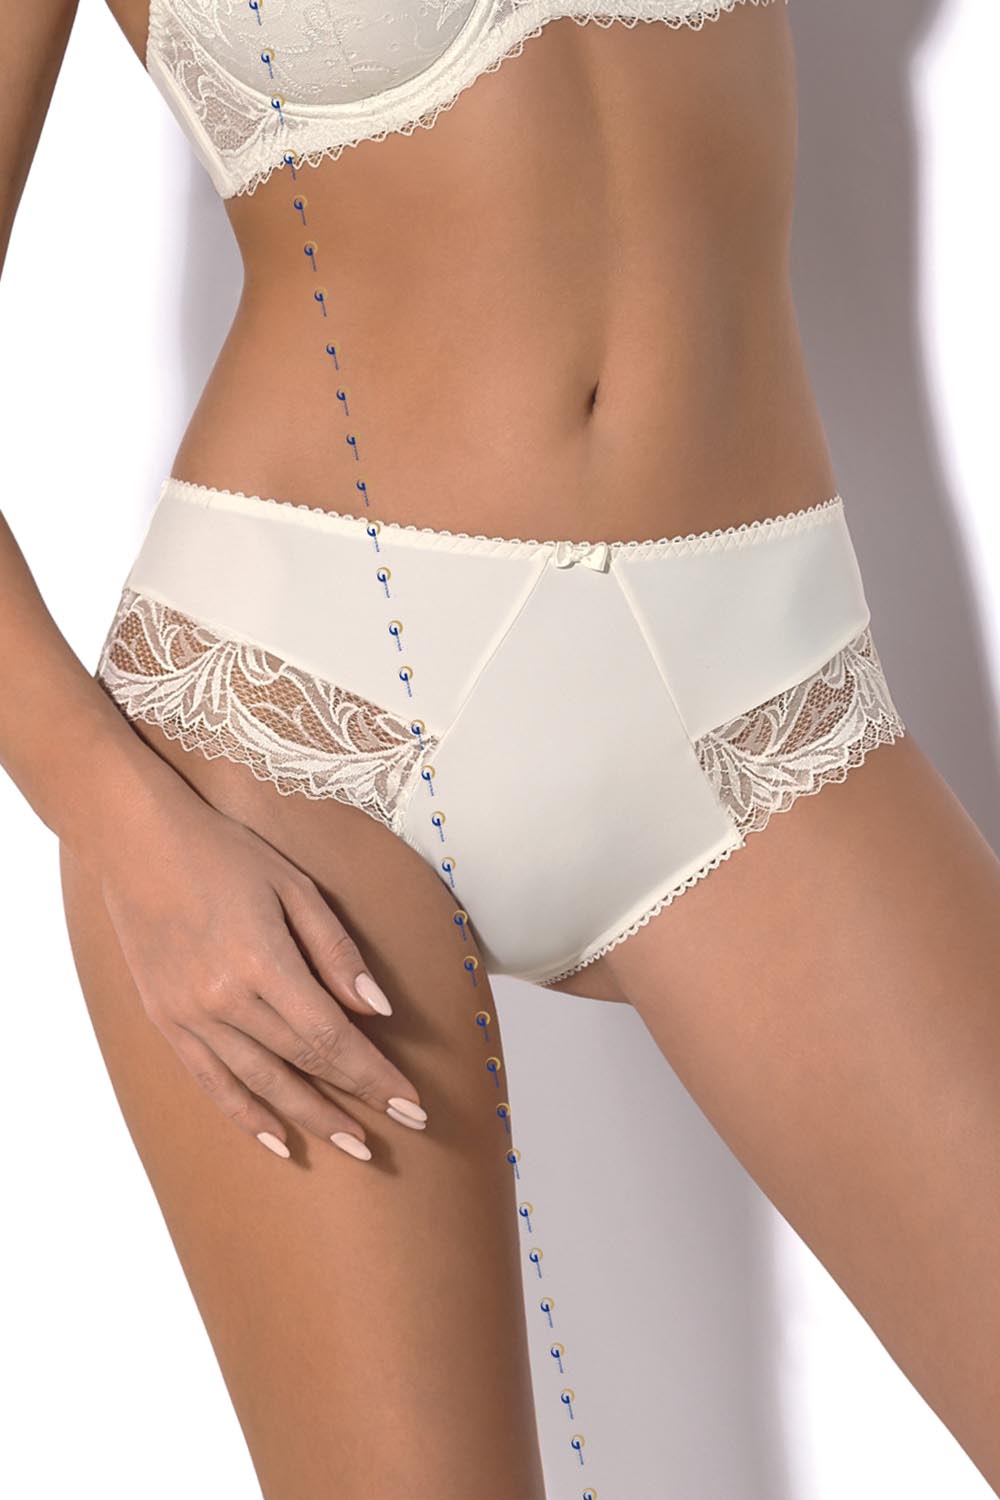 Panties model 109476 Gorsenia Lingerie beige Ladies